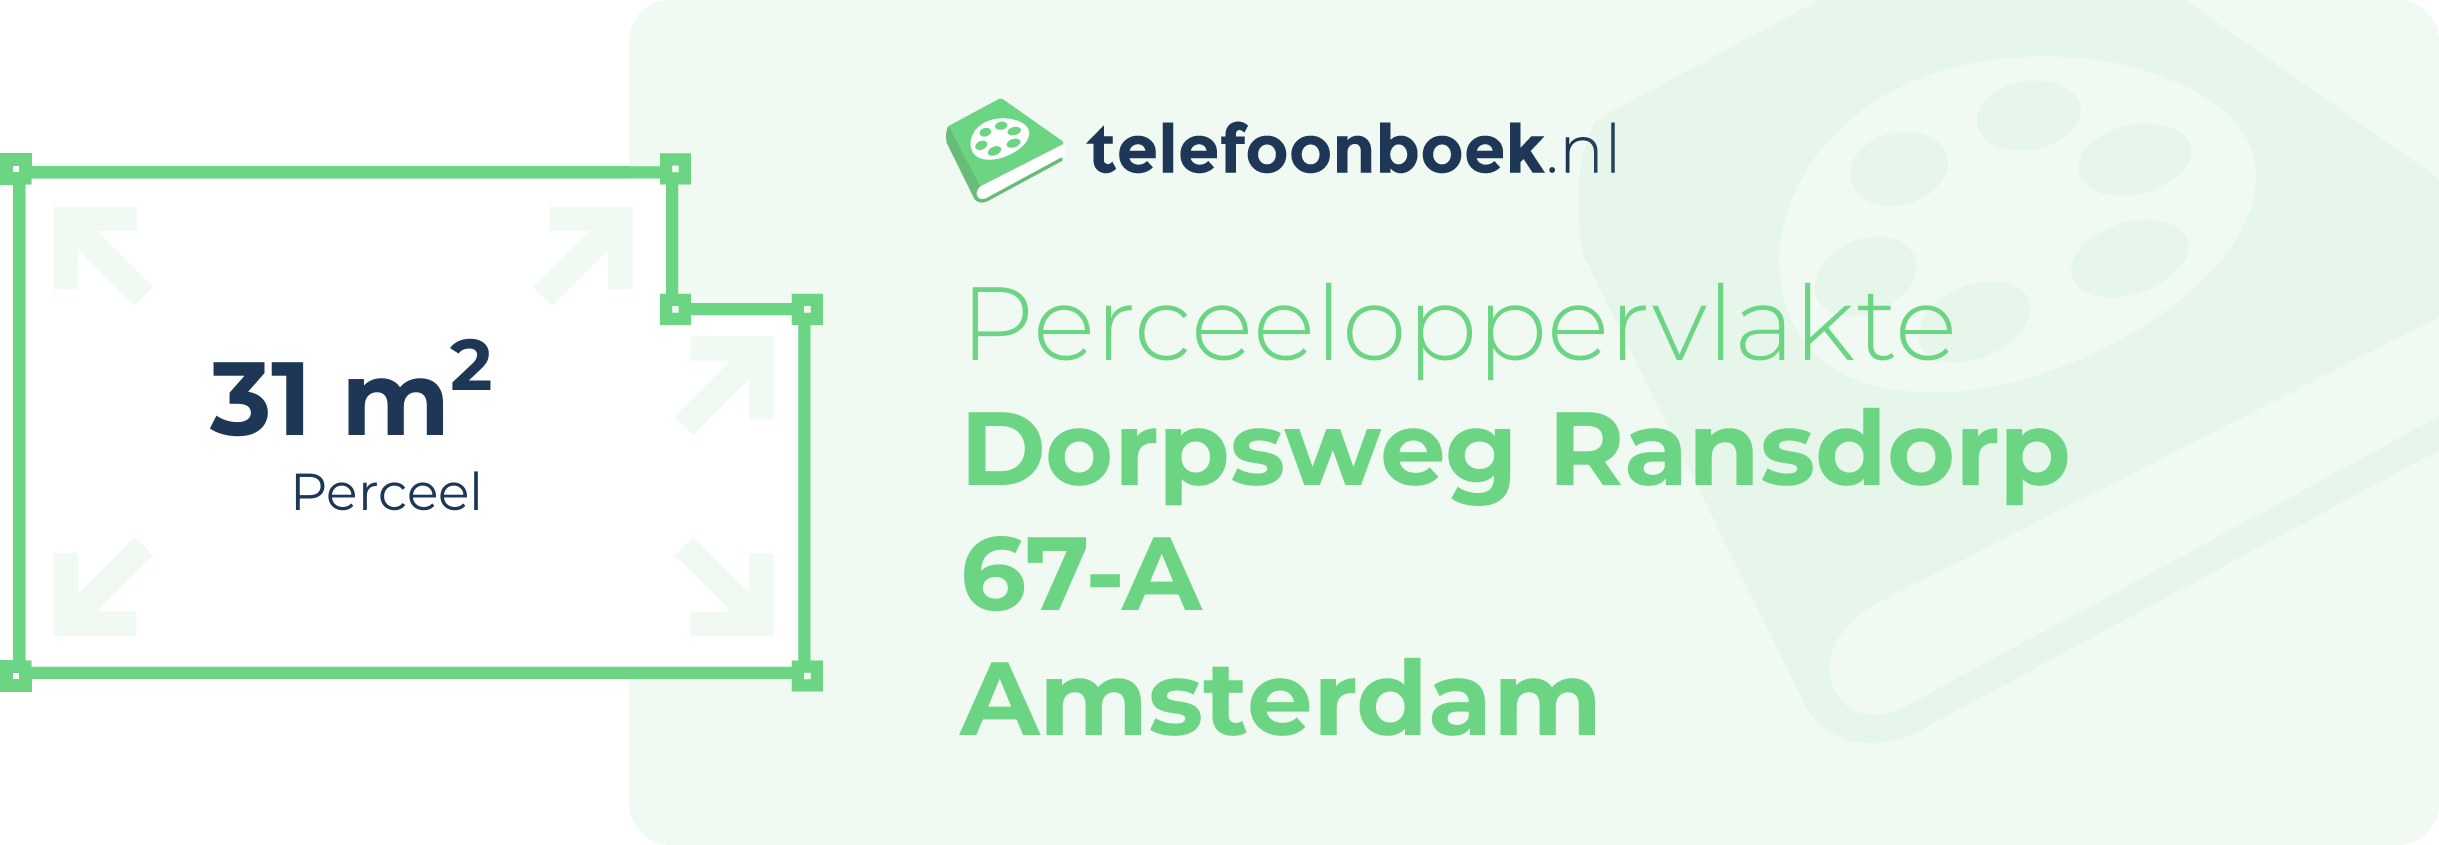 Perceeloppervlakte Dorpsweg Ransdorp 67-A Amsterdam